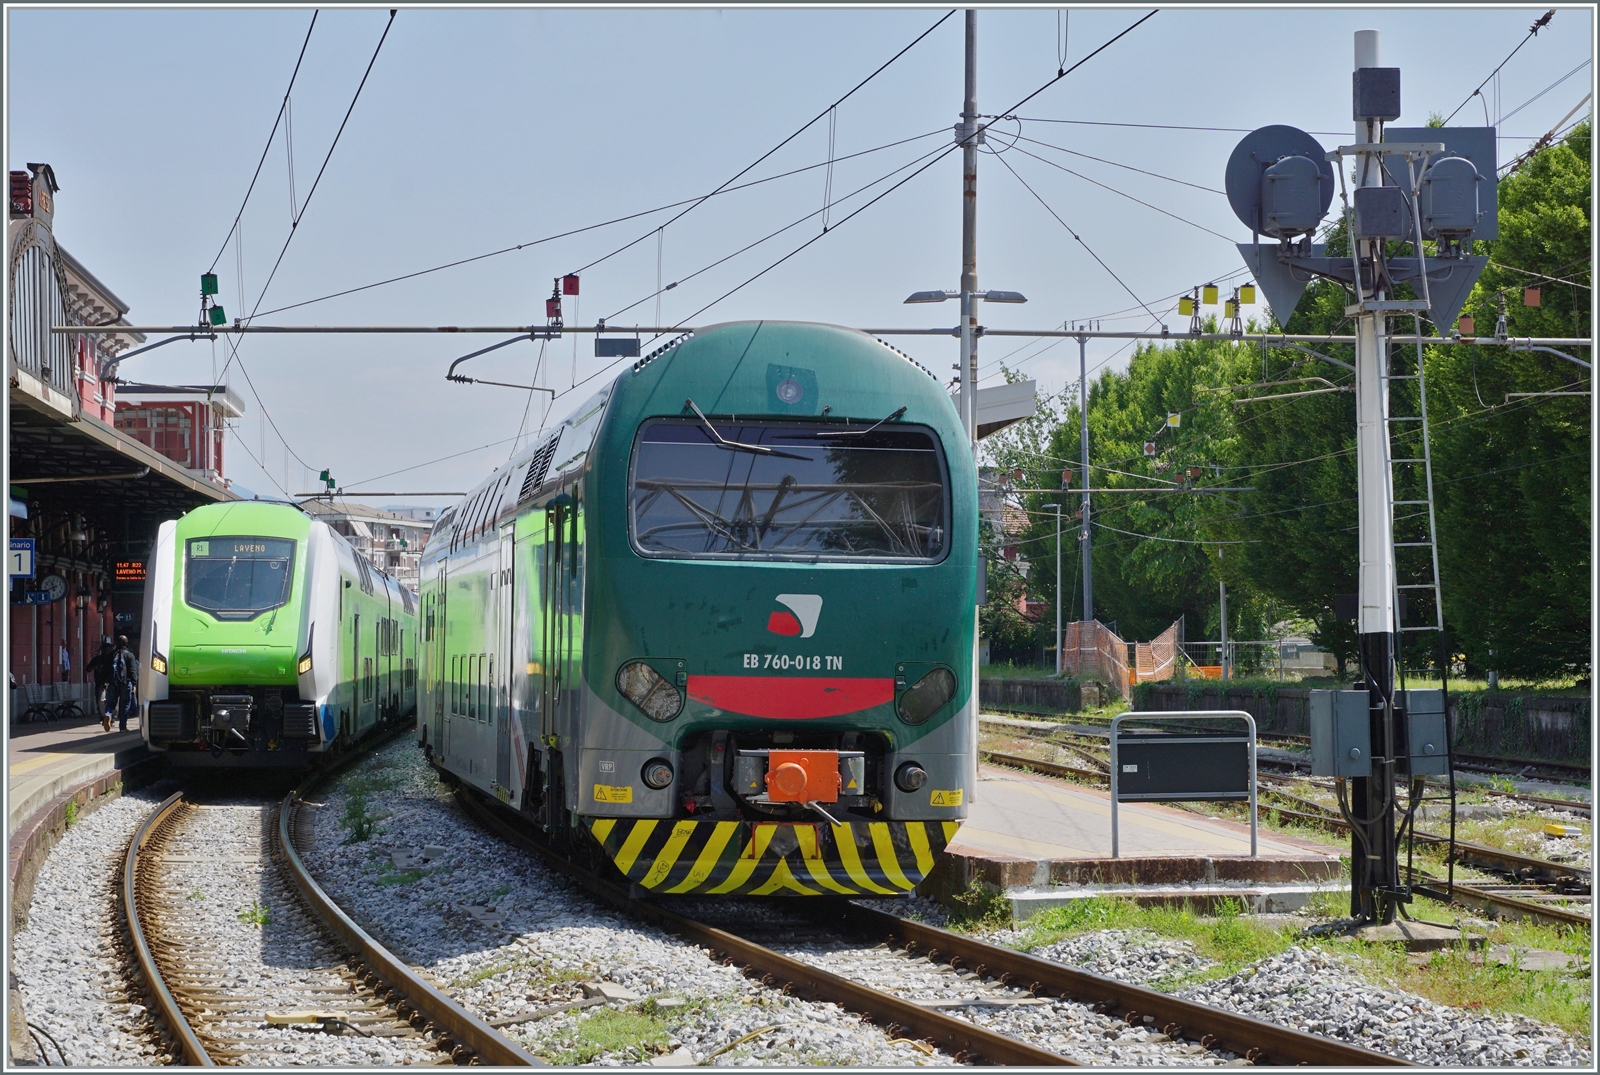 Fotografieren im Bahnhof Varese Nord (ex FMN) ist ein schwieriges Unterfangen: Auf Gleis 2 verdecken zwei abgestellte Ale 711 Züge die Sicht und hinter meinem Rücken endet der Bahnsteig. Auf Gleis 1 ist ein Trenord Rock Triebzug aus Milano eingetrofen, der nach kurzem Aufenthalt nach Laveno Mombello Nord weiterfahren wird.

23. Mai 2023